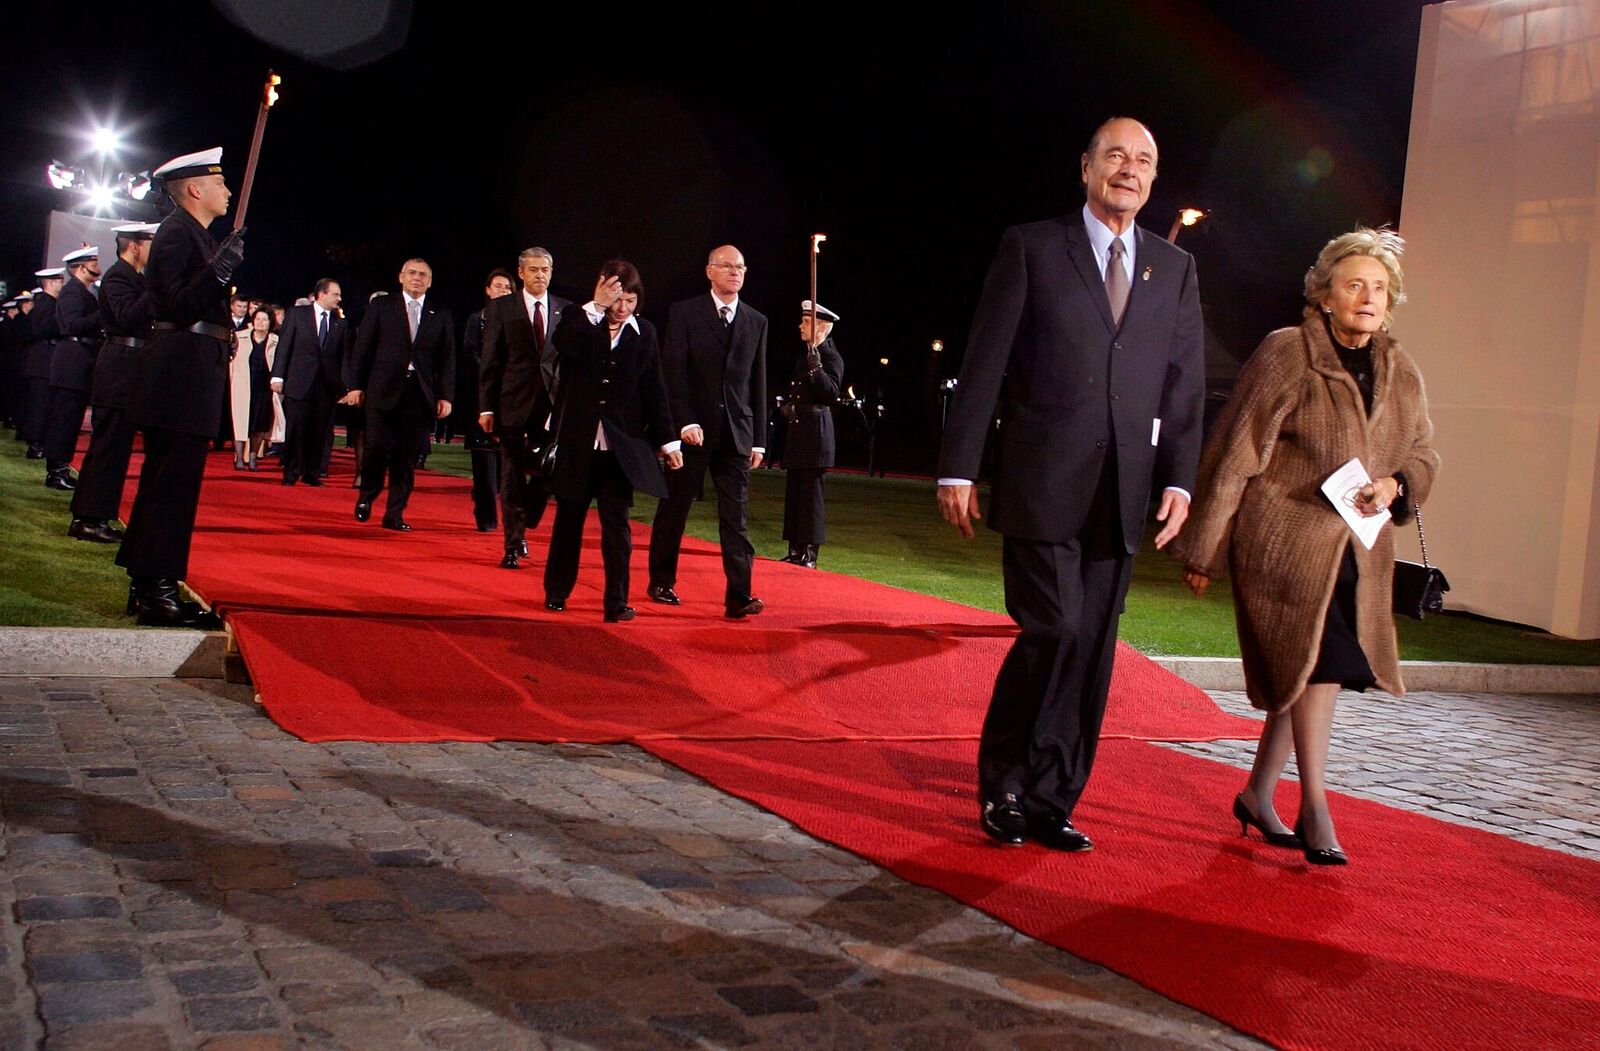 Jaques Chirac et son épouse Bernadette arrivent à un dîner en l'honneur des dirigeants européens au Bellevue Palace le 24 mars 2007 à Berlin. | Photo : GettyImage